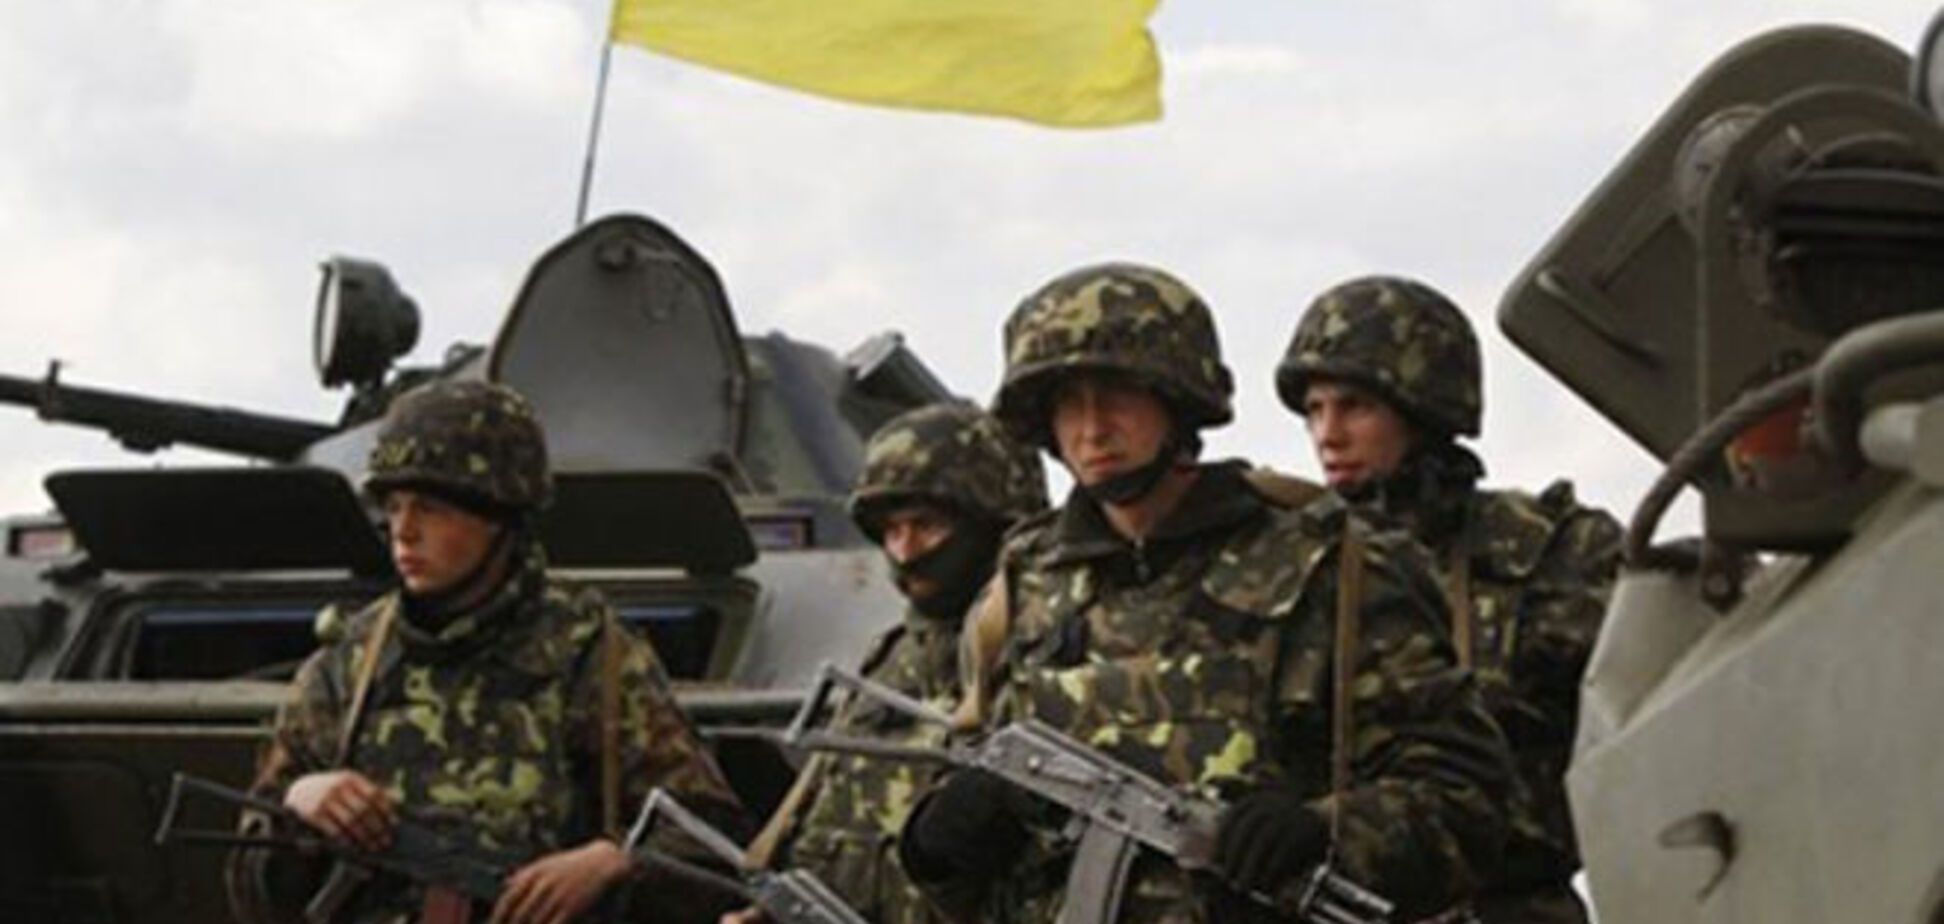 Українські бійці за свої подвиги отримали понад 7 млн гривень - Генштаб